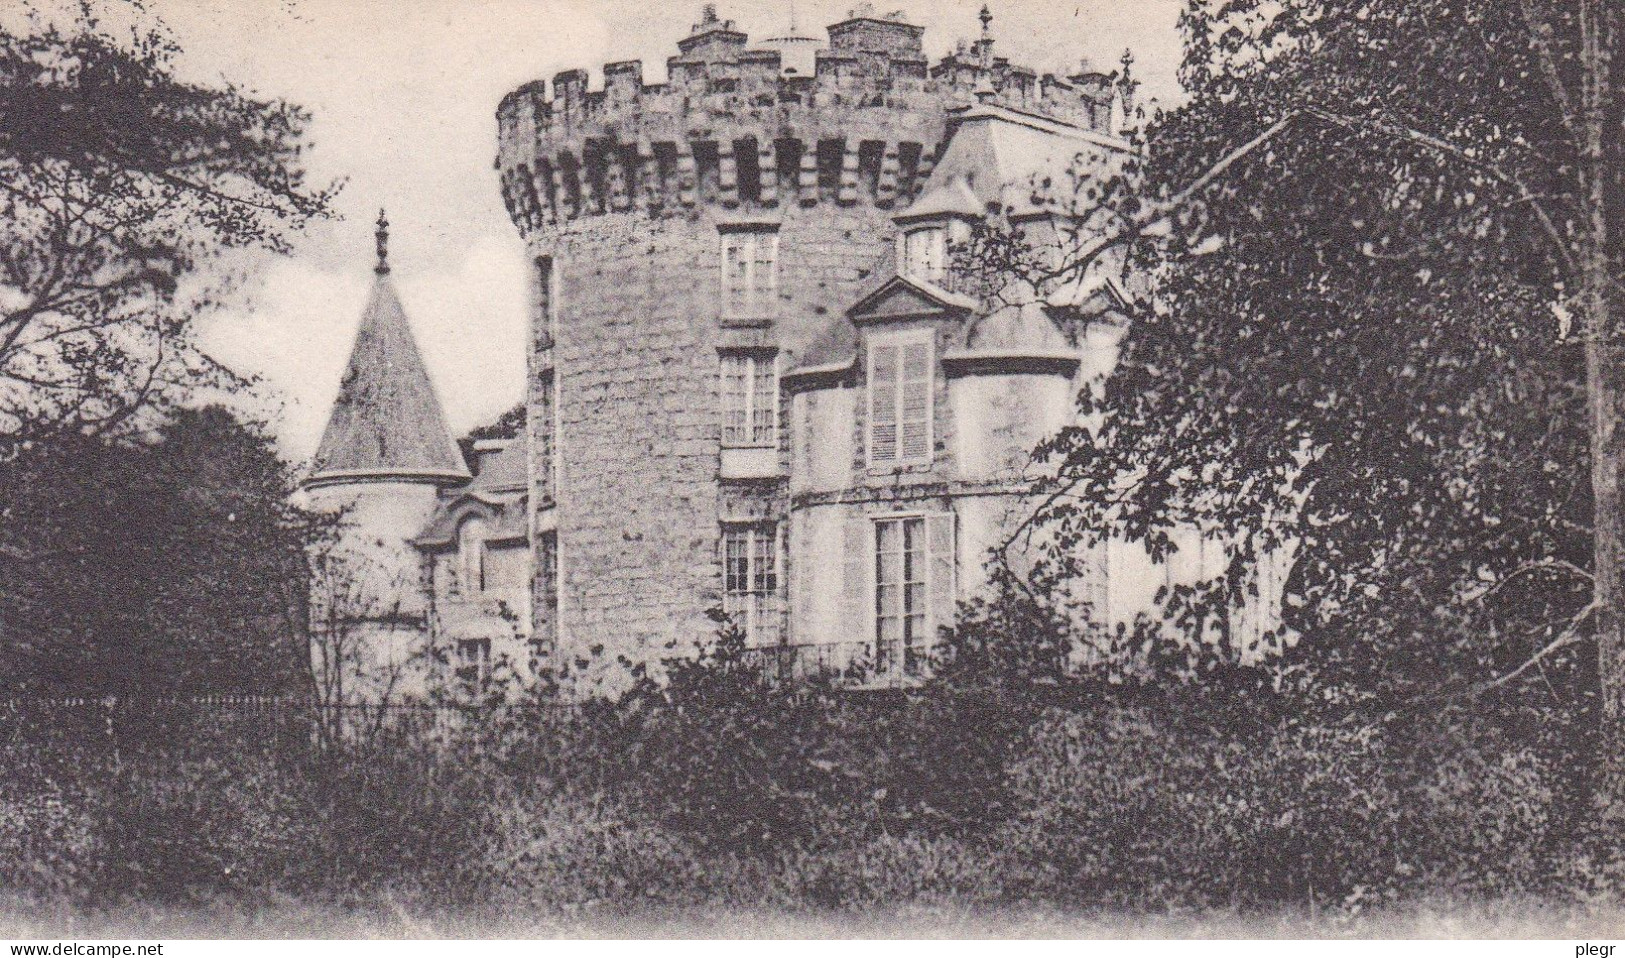 0-78517 01 16 - RAMBOUILLET - LE CHÂTEAU - LA TOUR FRANCOIS 1er - Rambouillet (Château)